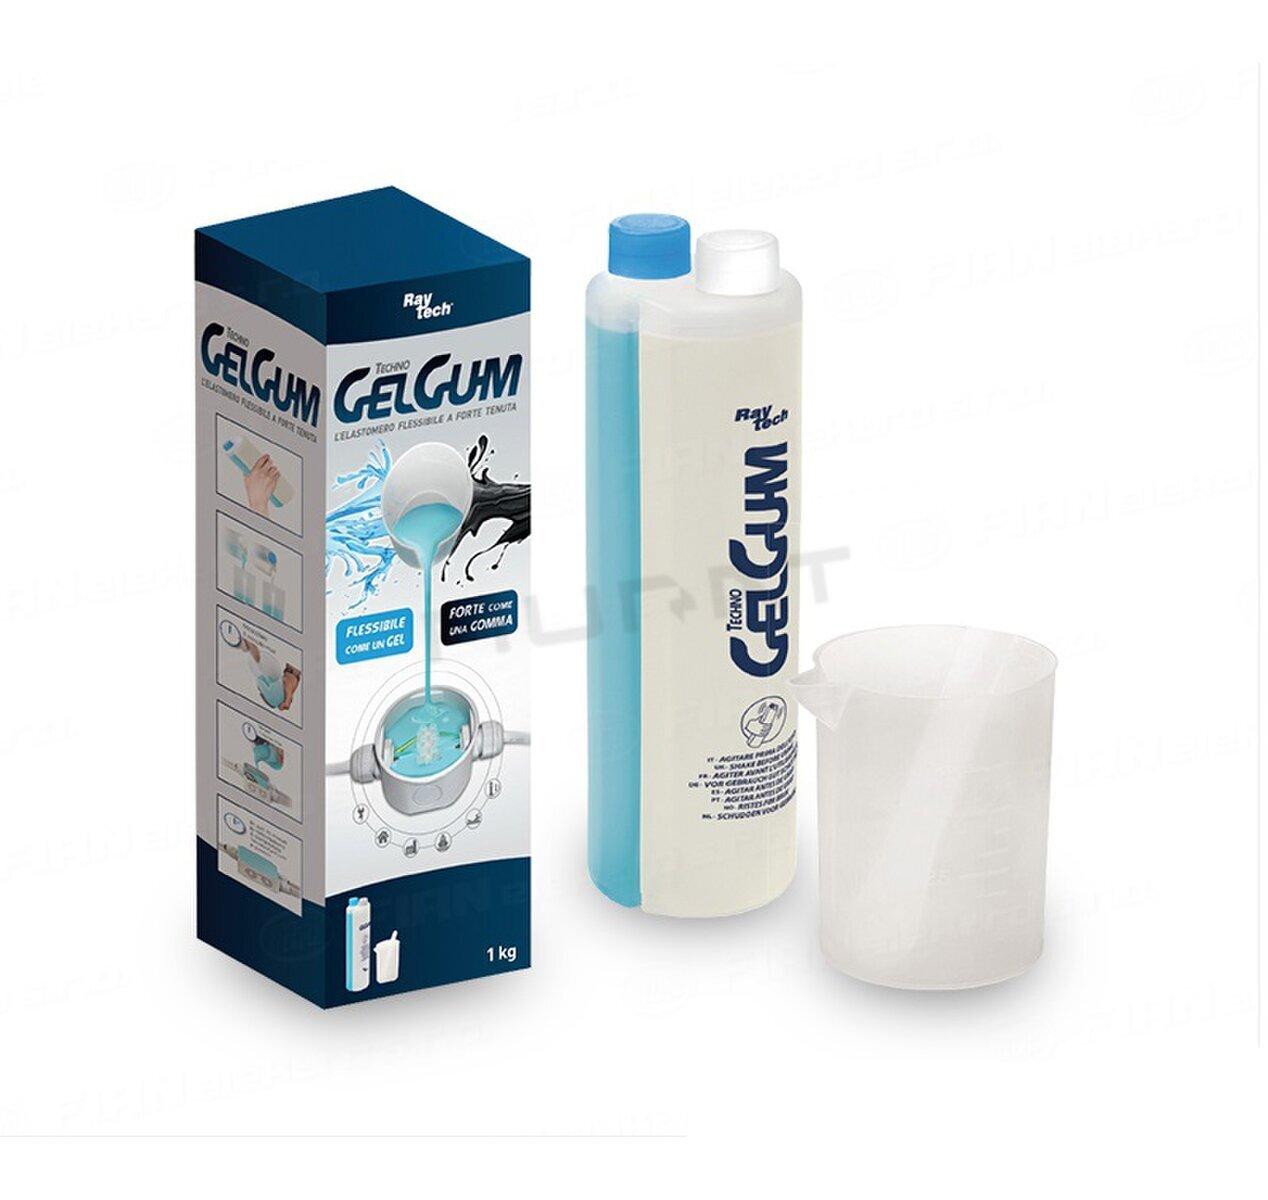 FN-Techno Gel Gum Zalievací gum-gel dvojzložkový 1kg